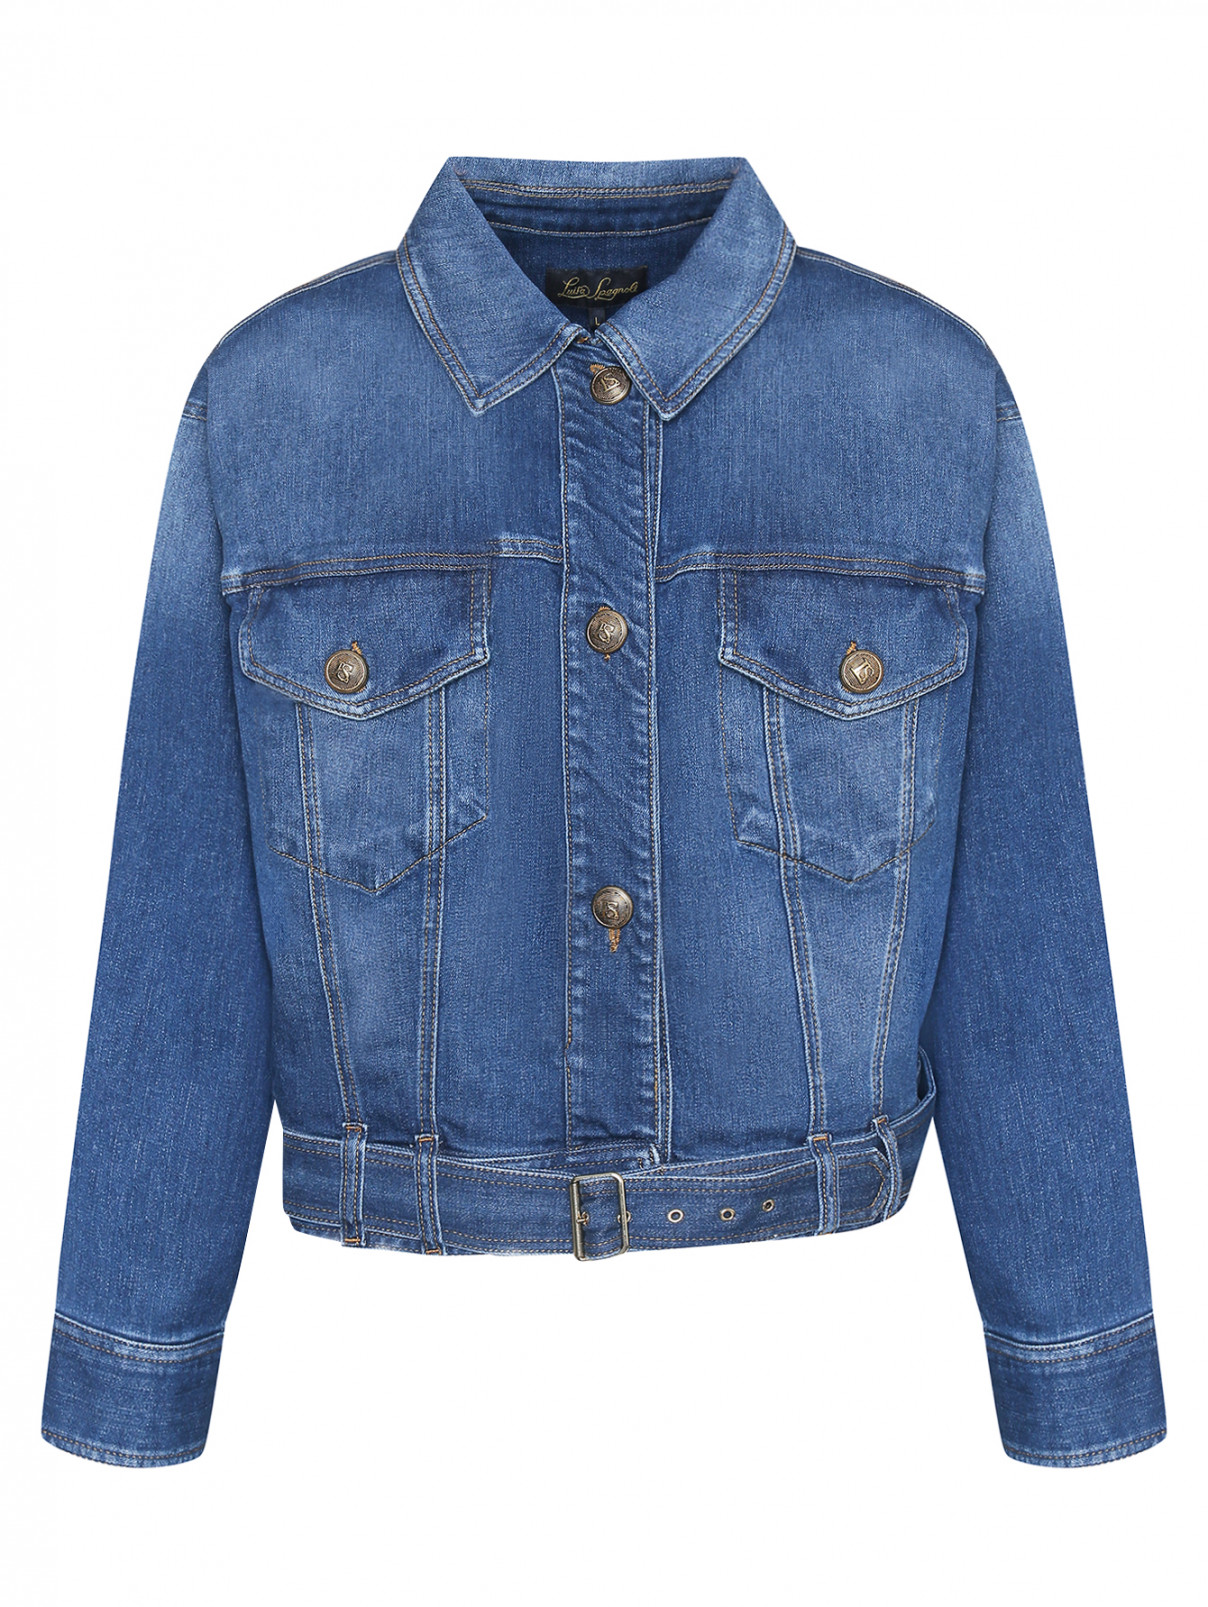 Джинсовая куртка с карманами Luisa Spagnoli  –  Общий вид  – Цвет:  Синий